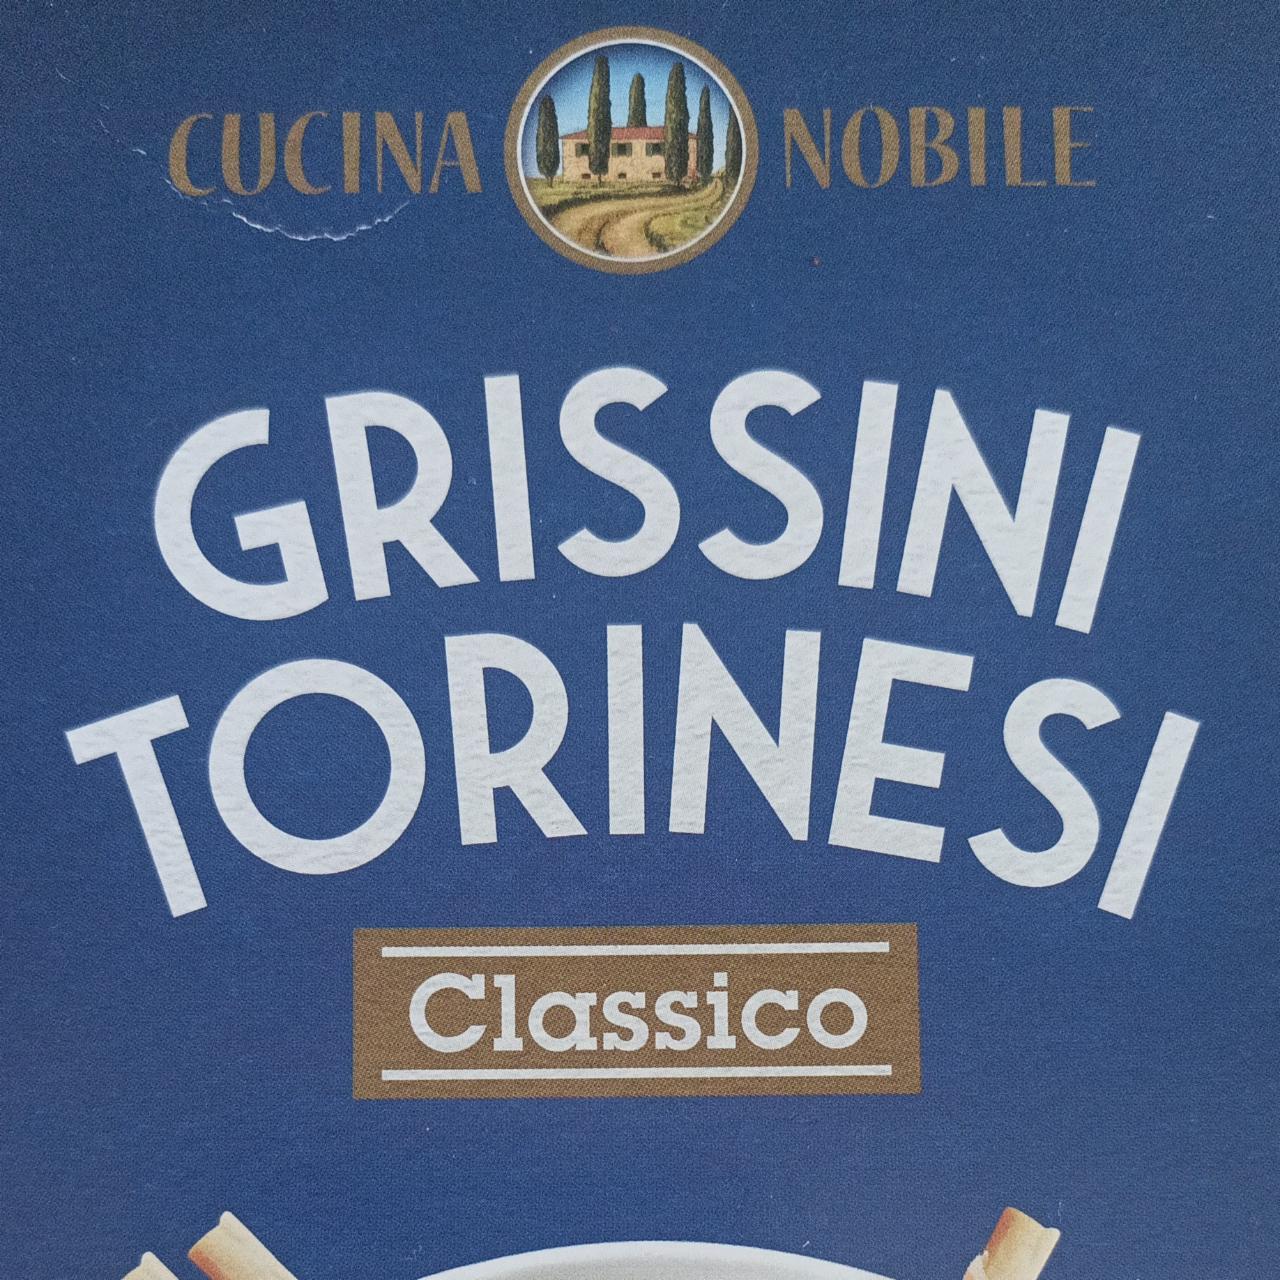 Fotografie - Grissini Torinesi classico Cucina Nobile